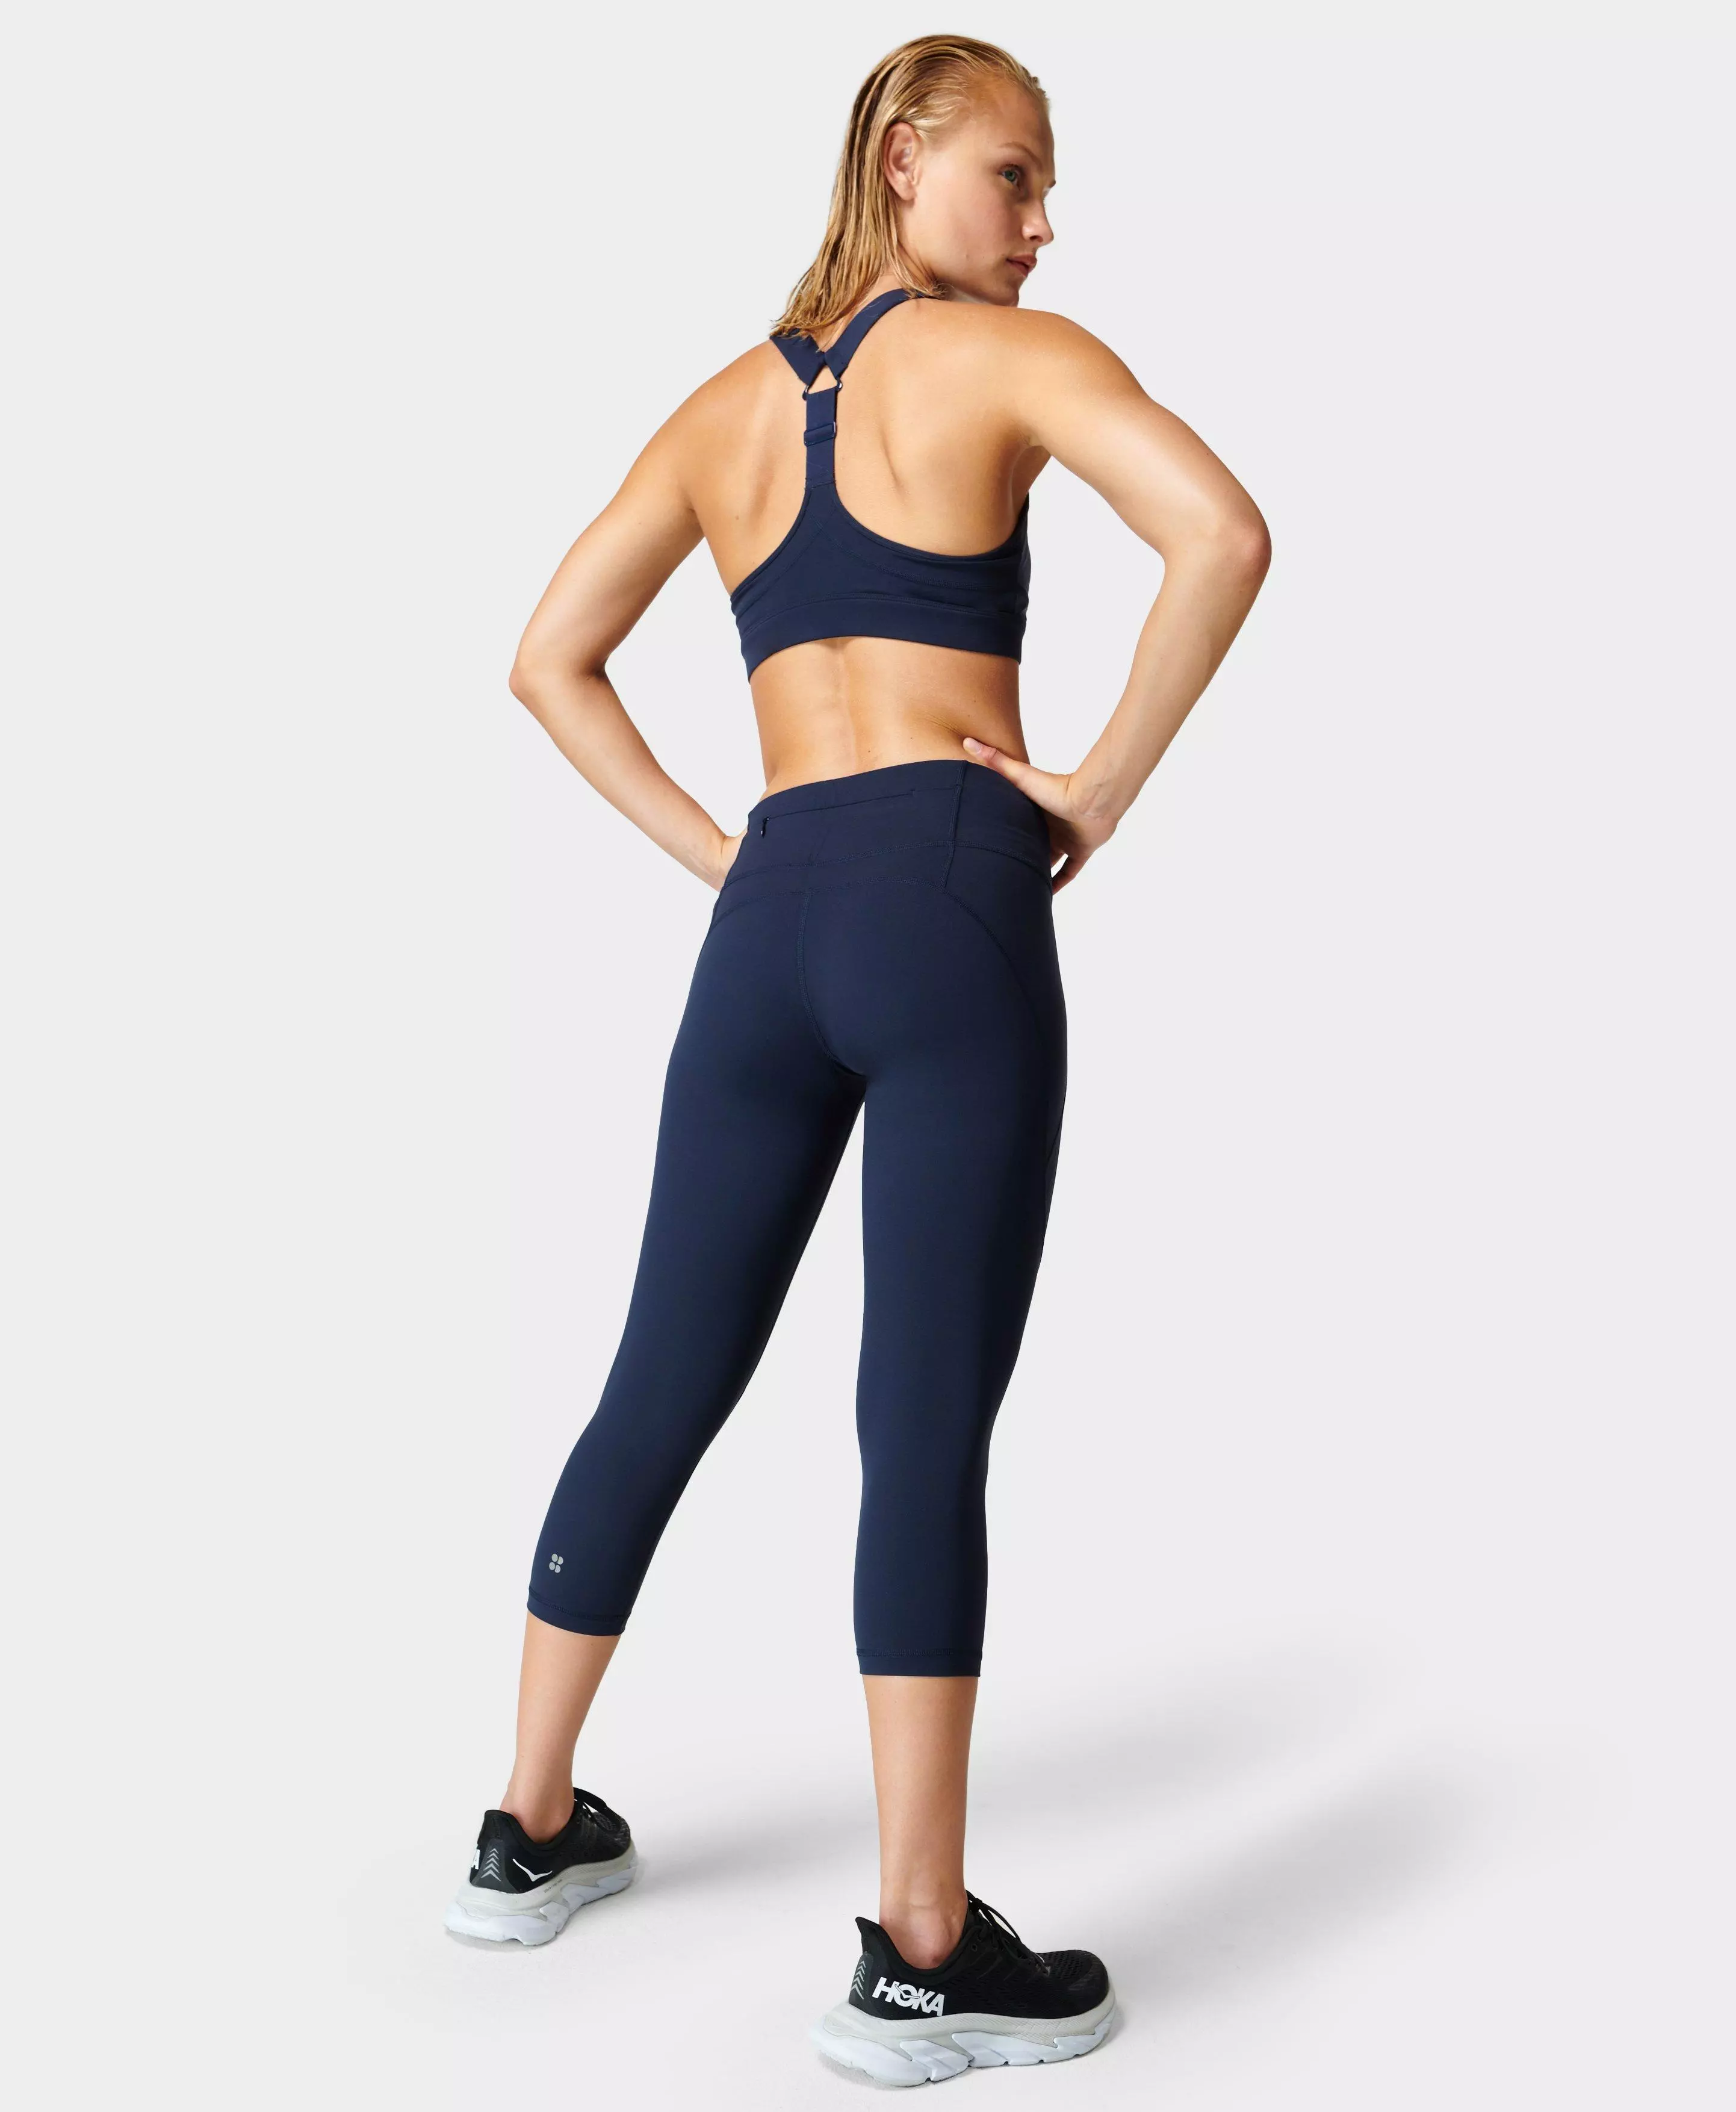 Pockets For Women - Sweaty Betty Power Cropped Sports Leggings, Blue,  Women's